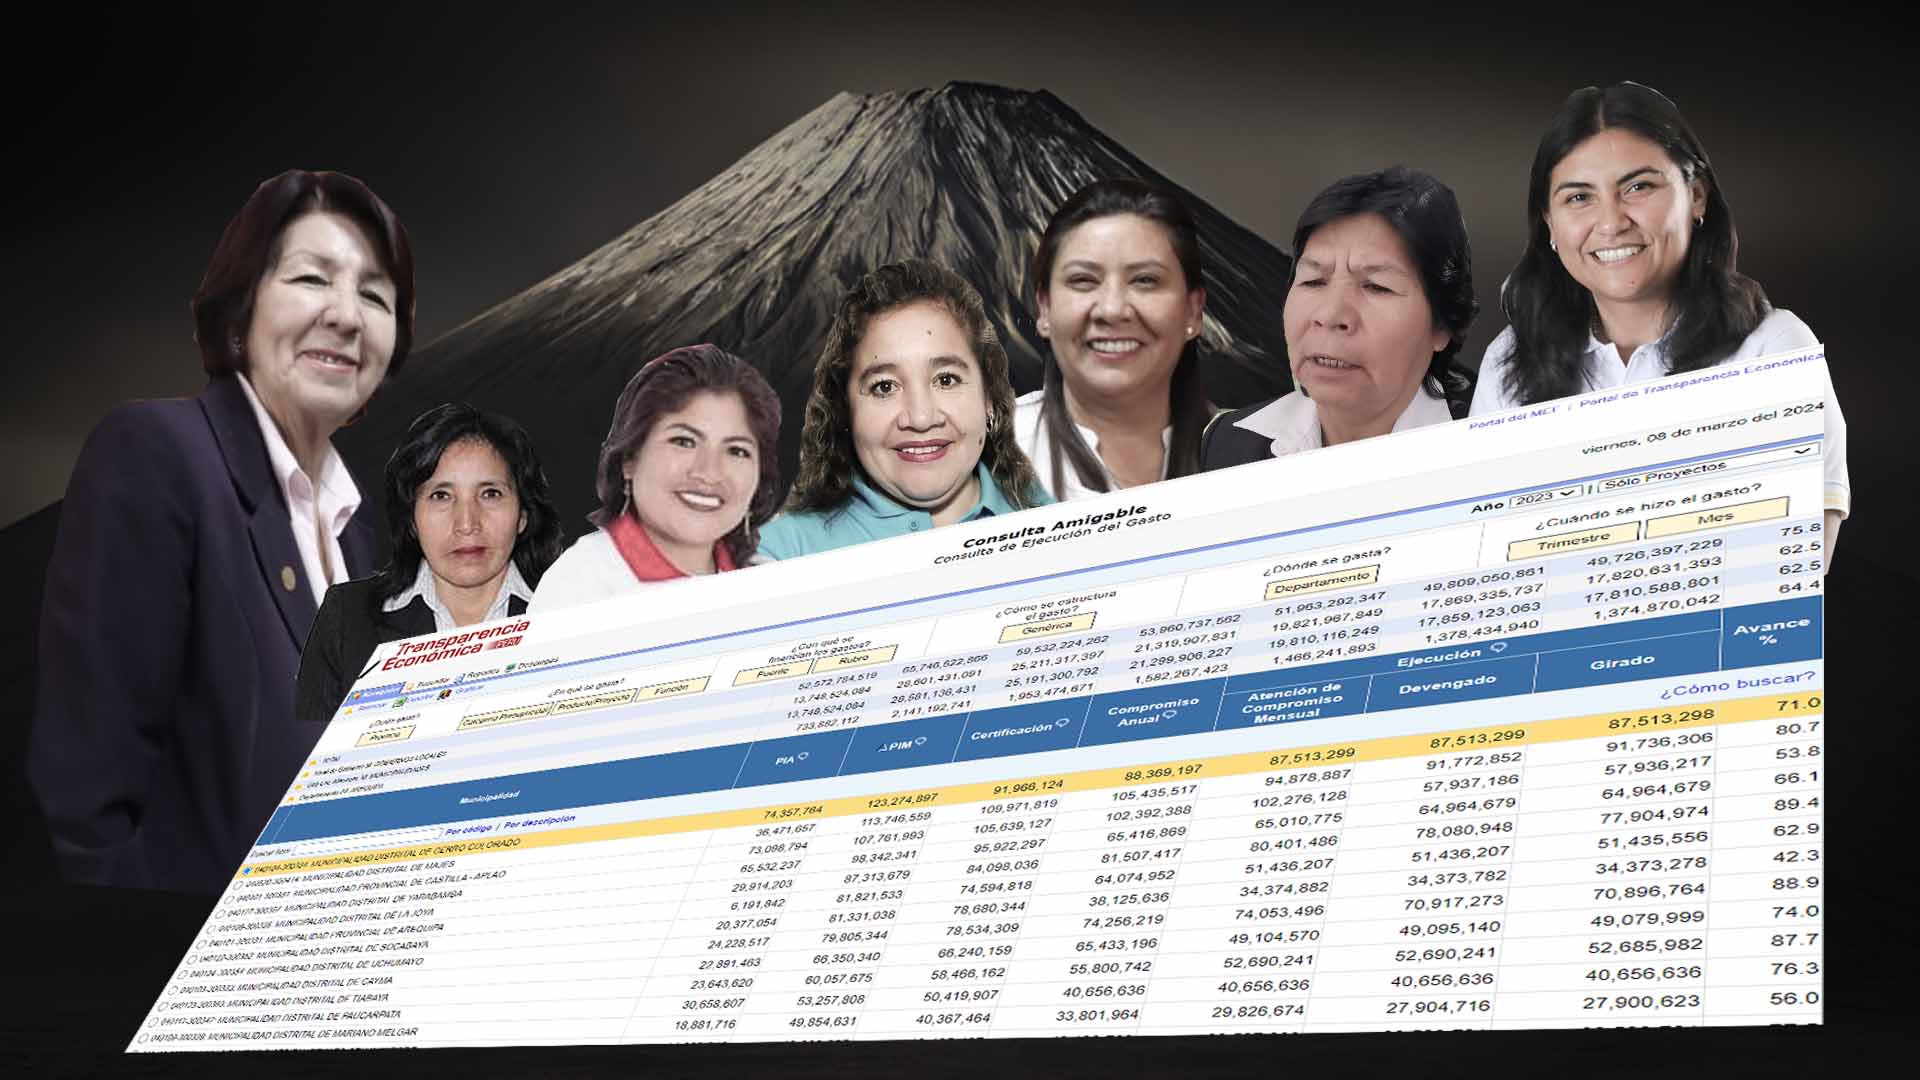 La ejecución presupuestal de las siete alcaldesas de Arequipa bajo análisis